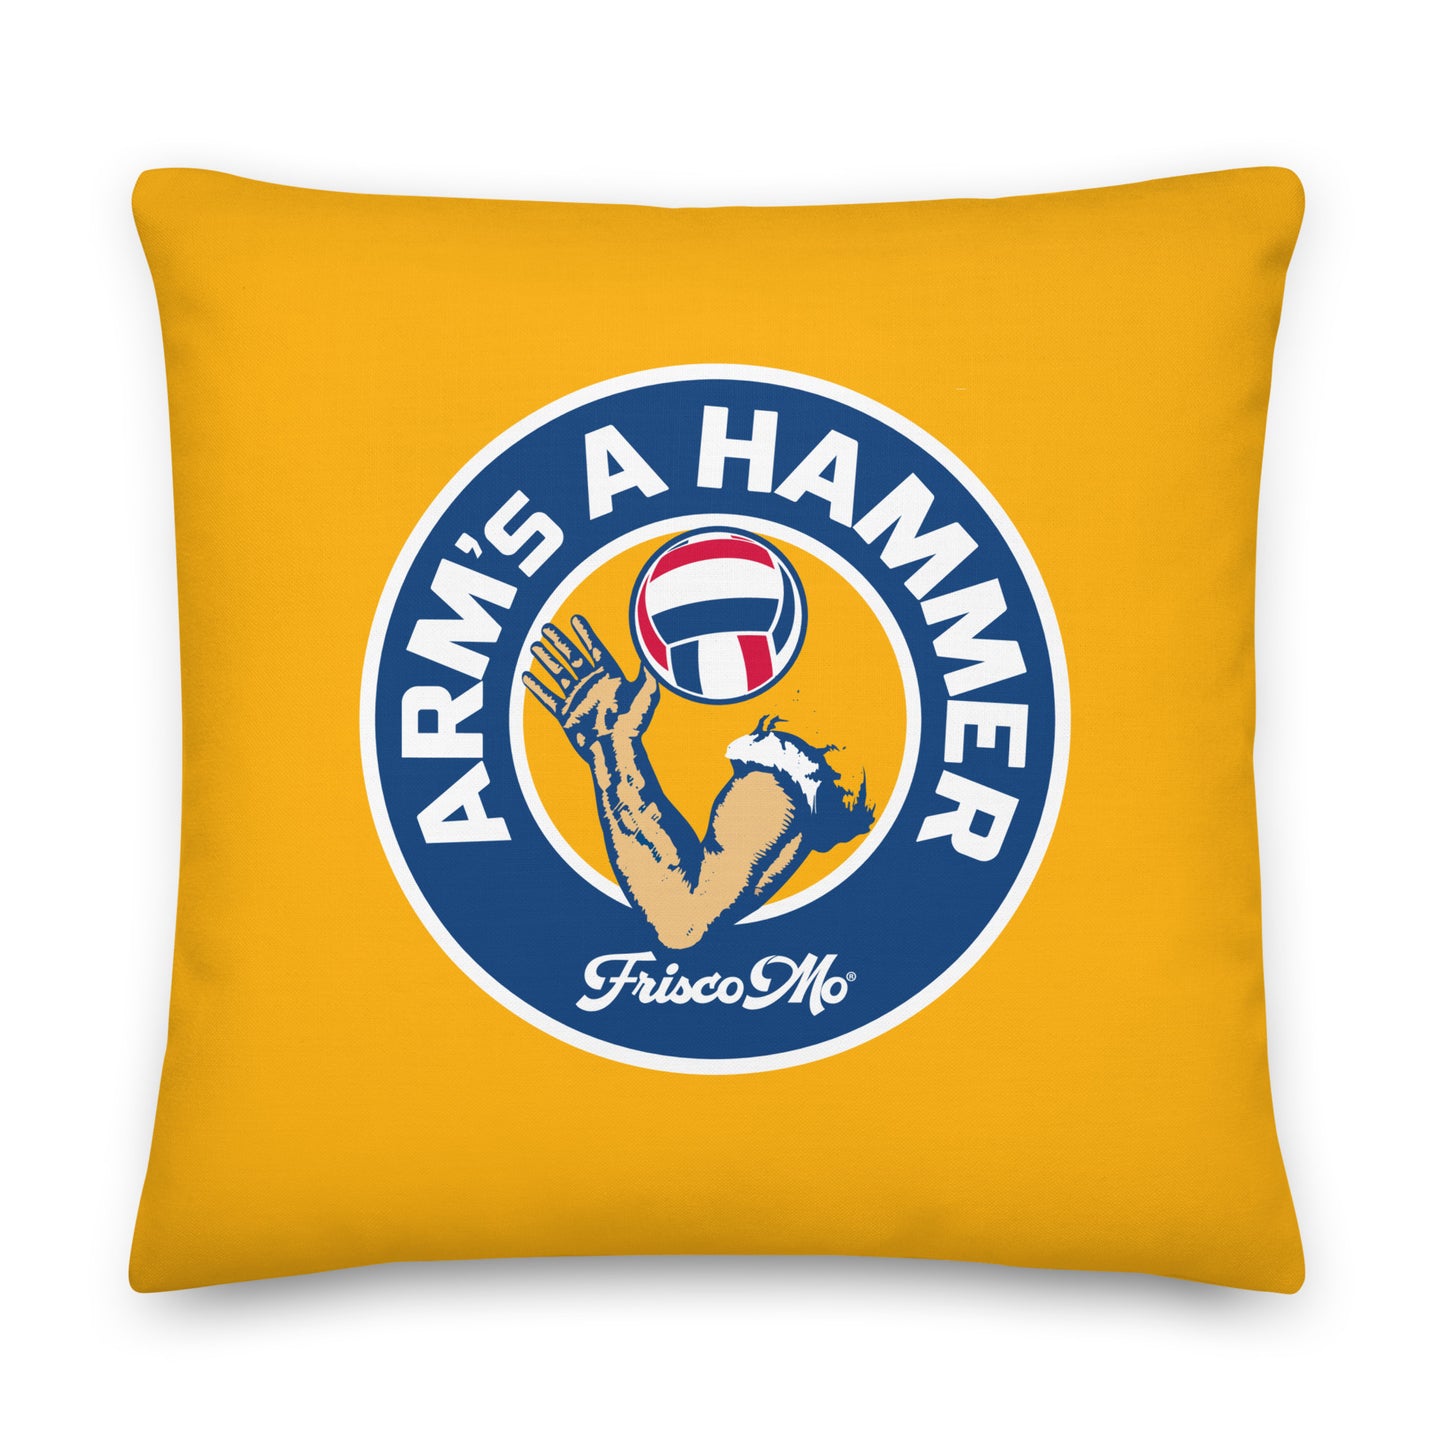 Arm's A Hammer Pillow